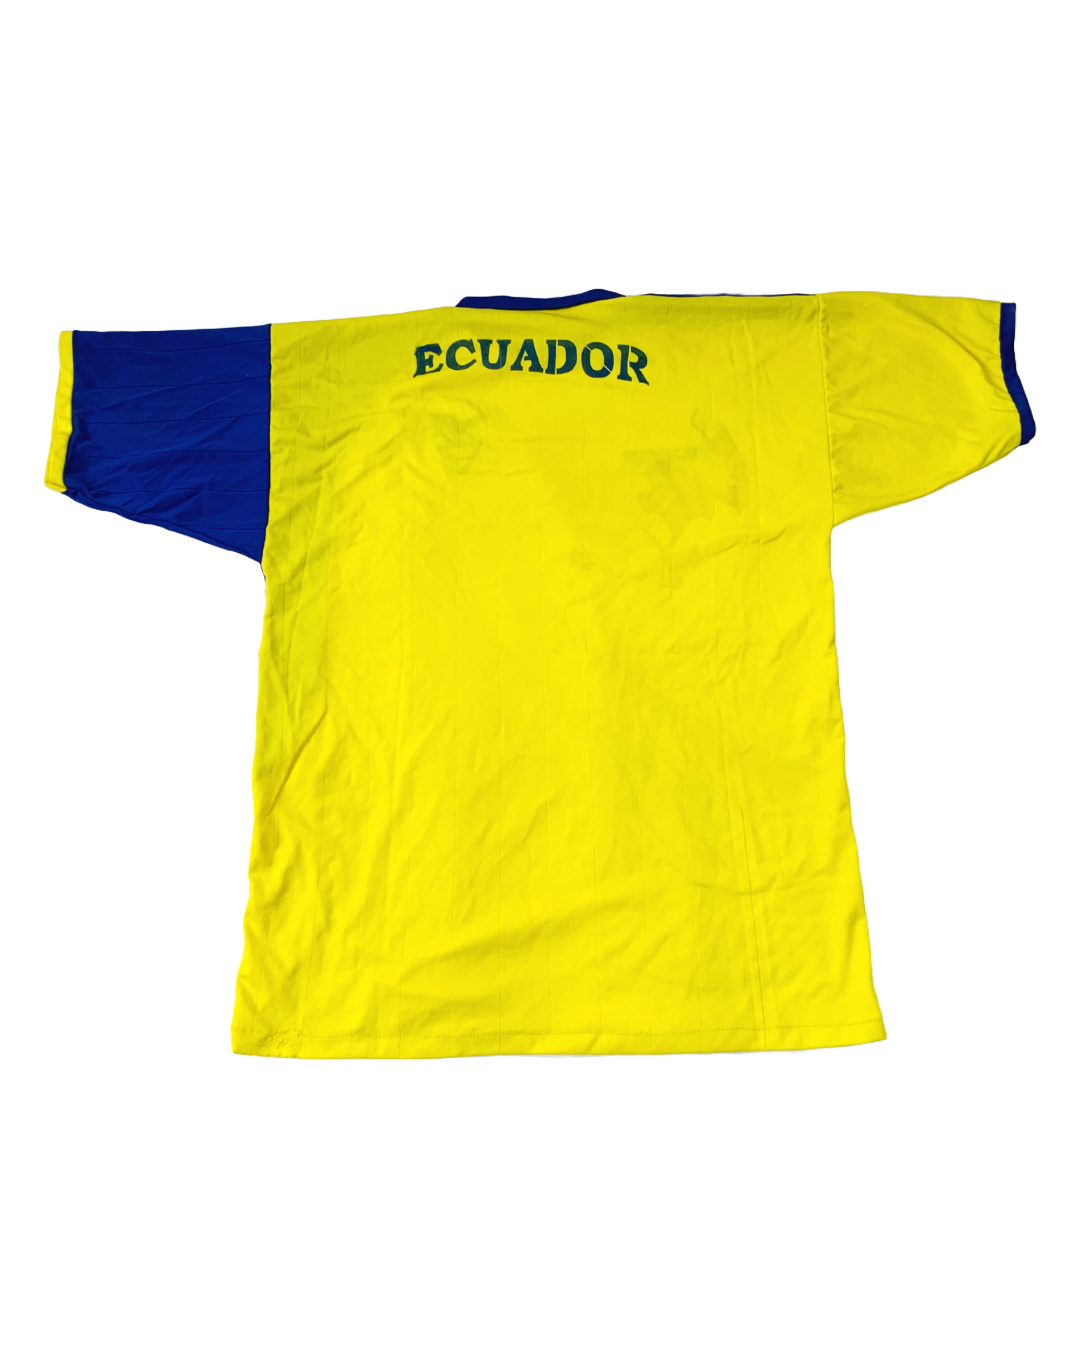 Ecuador Vintage Jersey - M